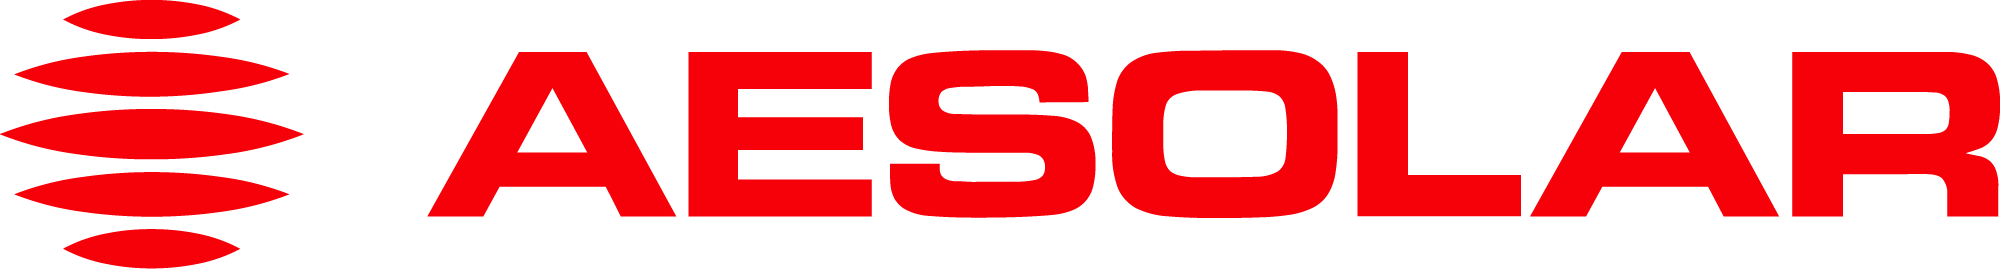 aesolar logo red